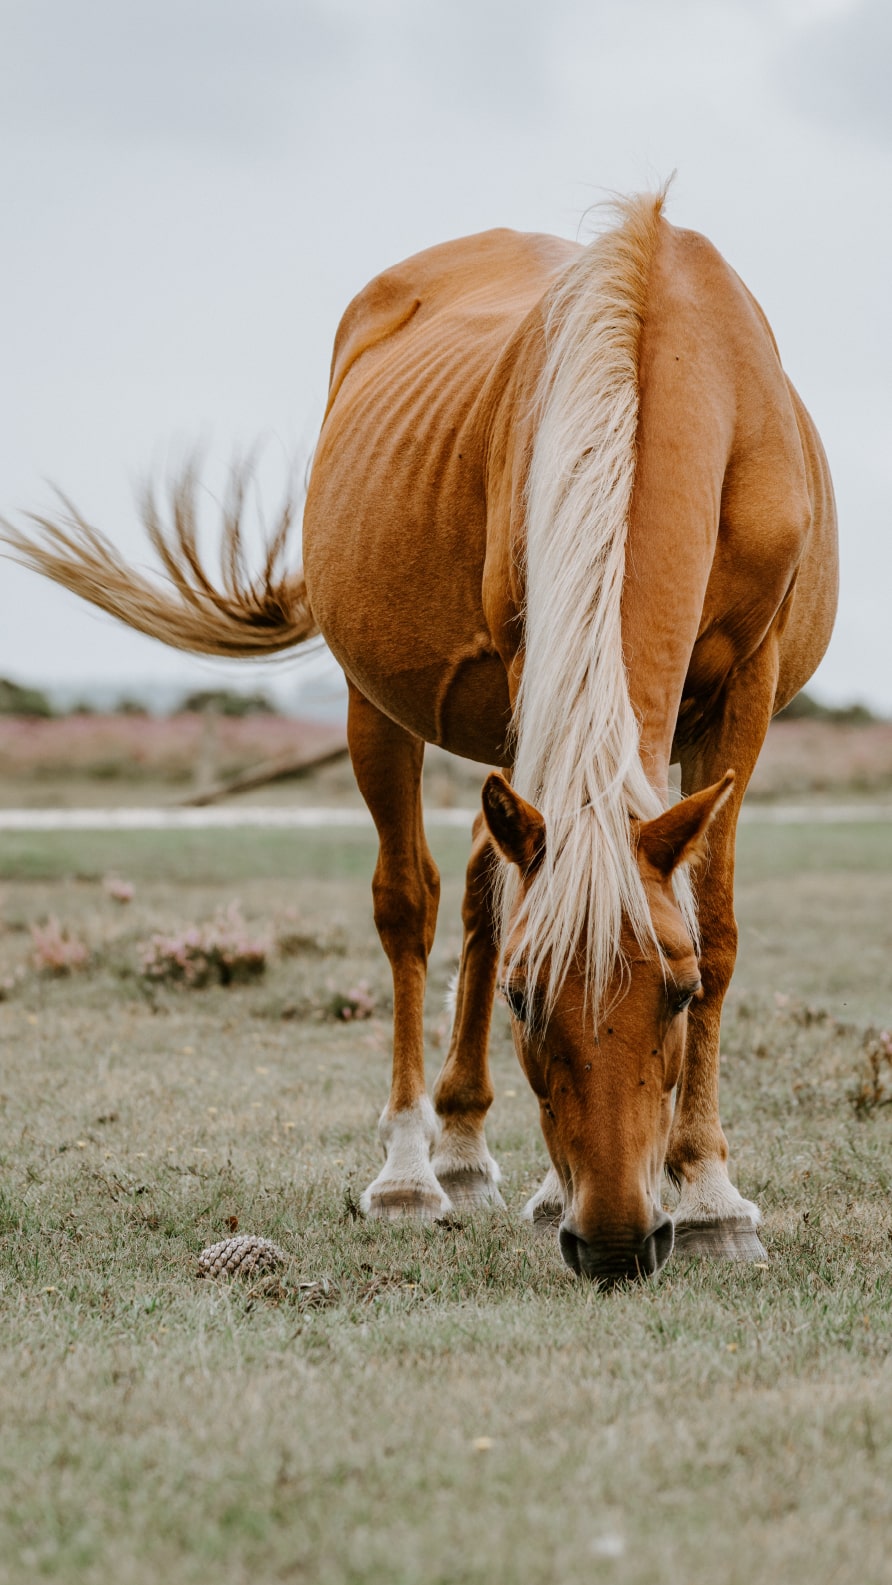 Fonds d'écran iPhone de chevaux